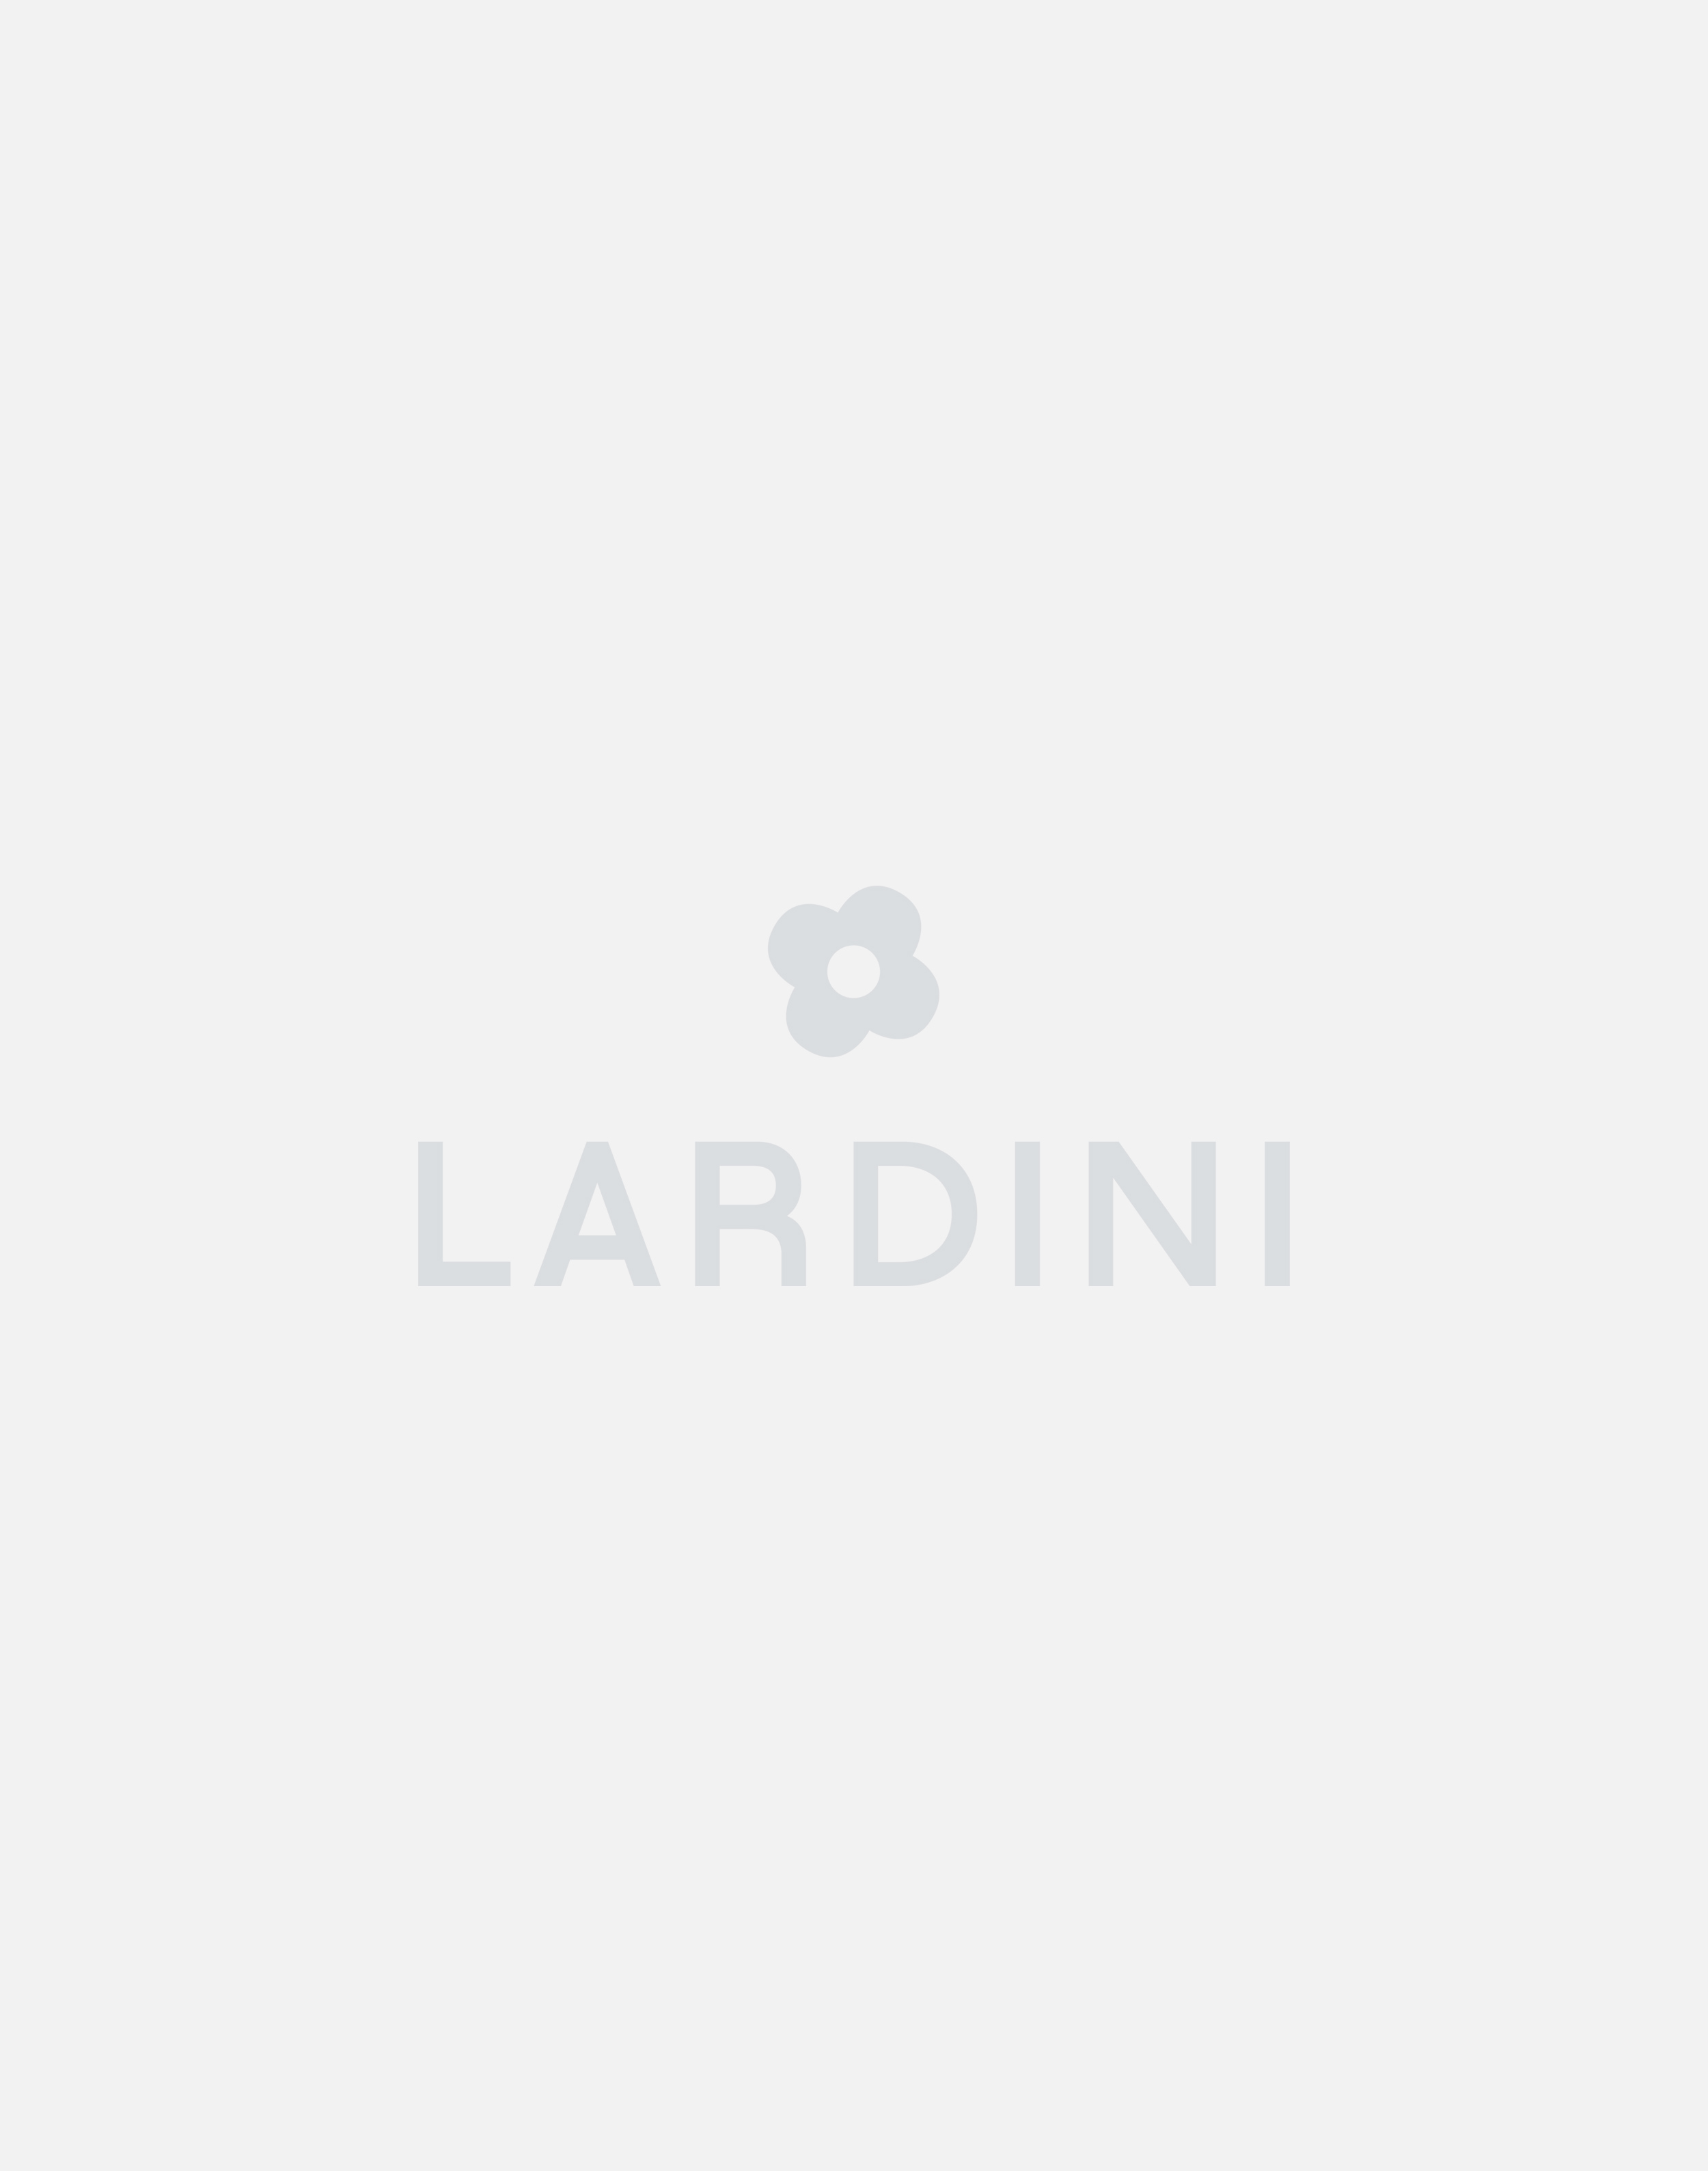 Single-breasted knit jacket - Luigi Lardini capsule 2